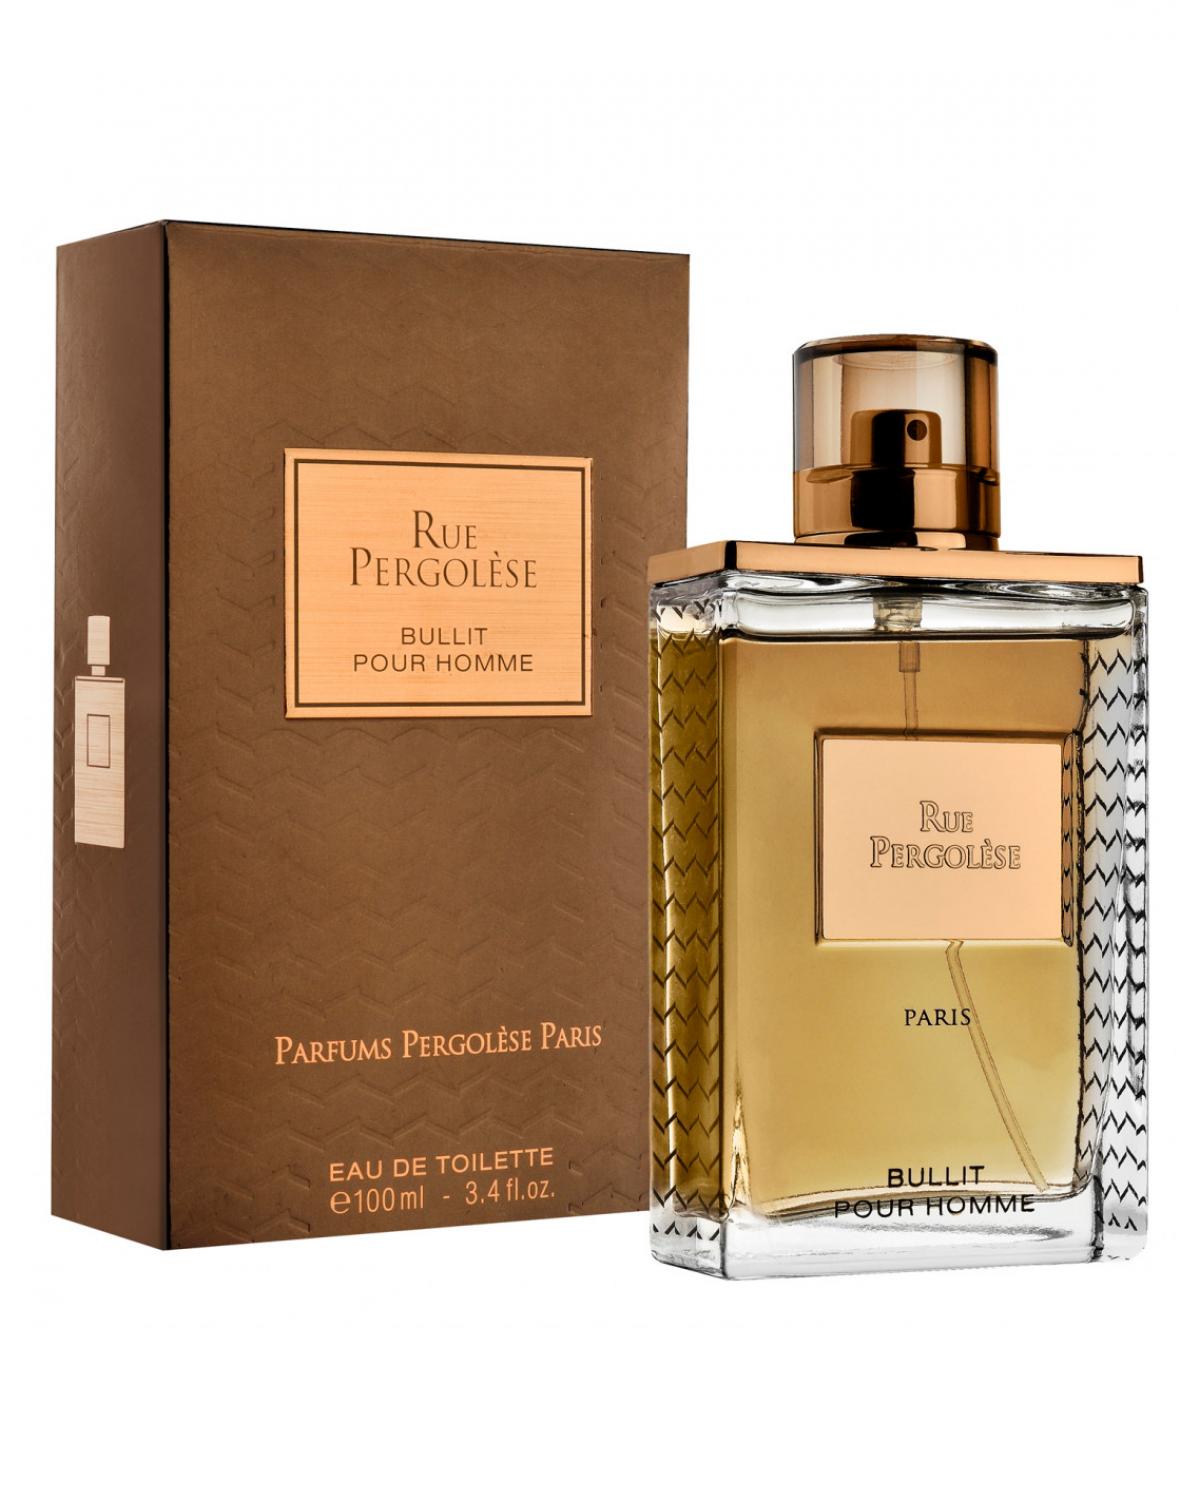 Rue Pergolese Bullit Pour Homme Parfums Pergolèse Paris - Perfume Masculino- Eau de Toilette - 100ml